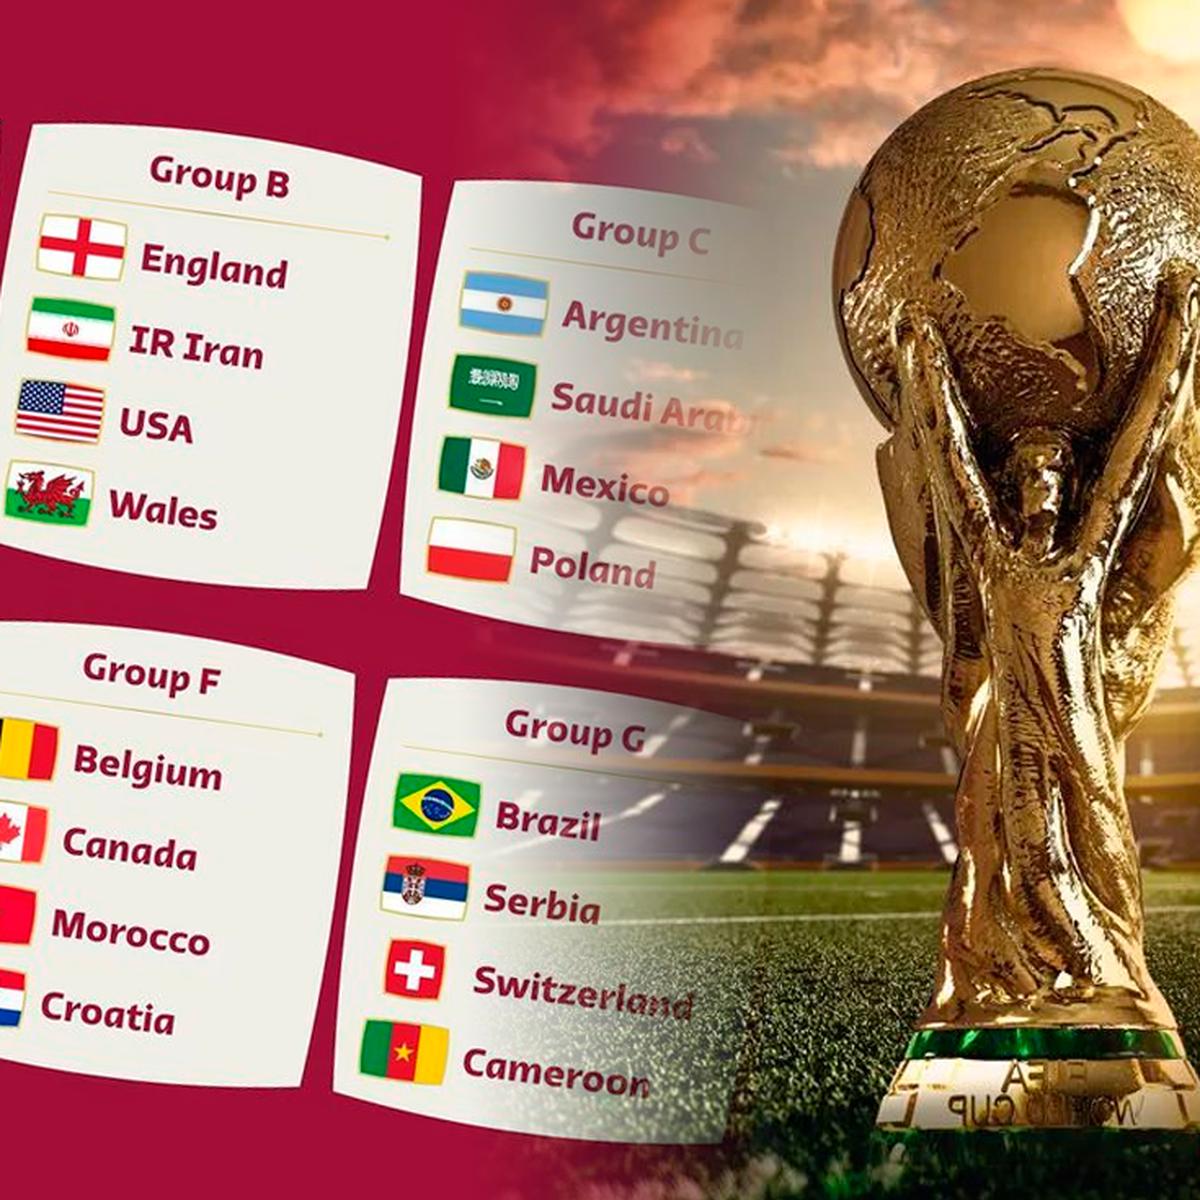 de hoy, 1 de diciembre: quienes juegan y resultados de Croacia vs. Bélgica, Canadá vs. Marruecos, Japón vs. España, Costa Rica vs. Alemania por el Mundial Qatar 2022 | MUNDIAL-X-DEPOR